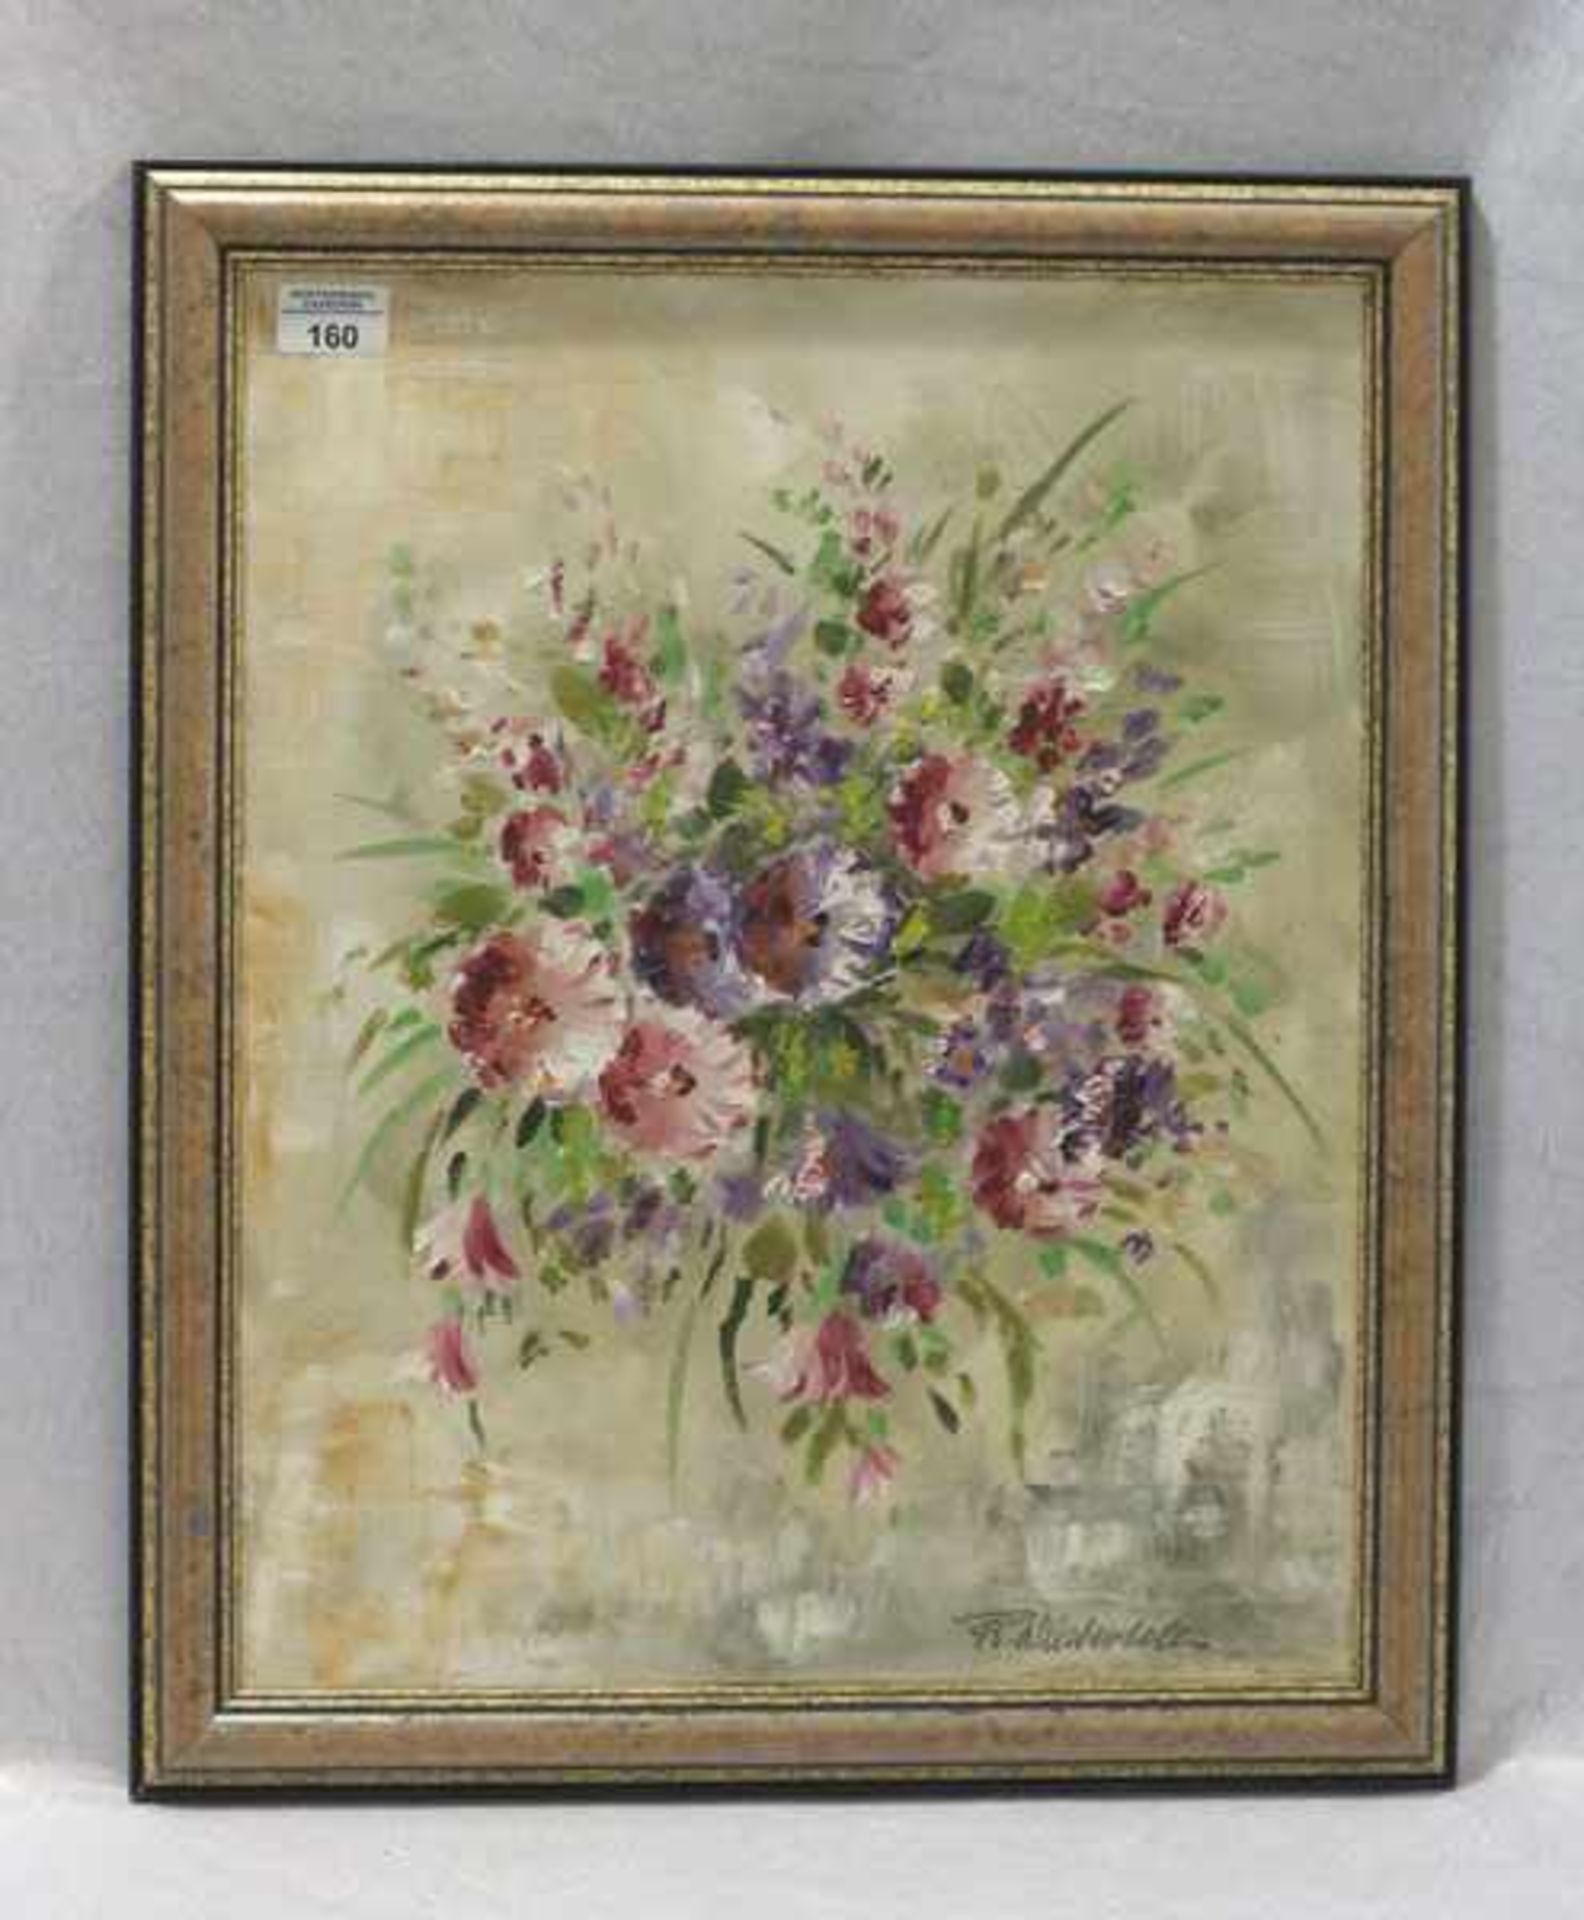 Gemälde ÖL/LW 'Blumenstilleben', signiert Fr. (Franz) Winterholler, Maler und Freskant aus